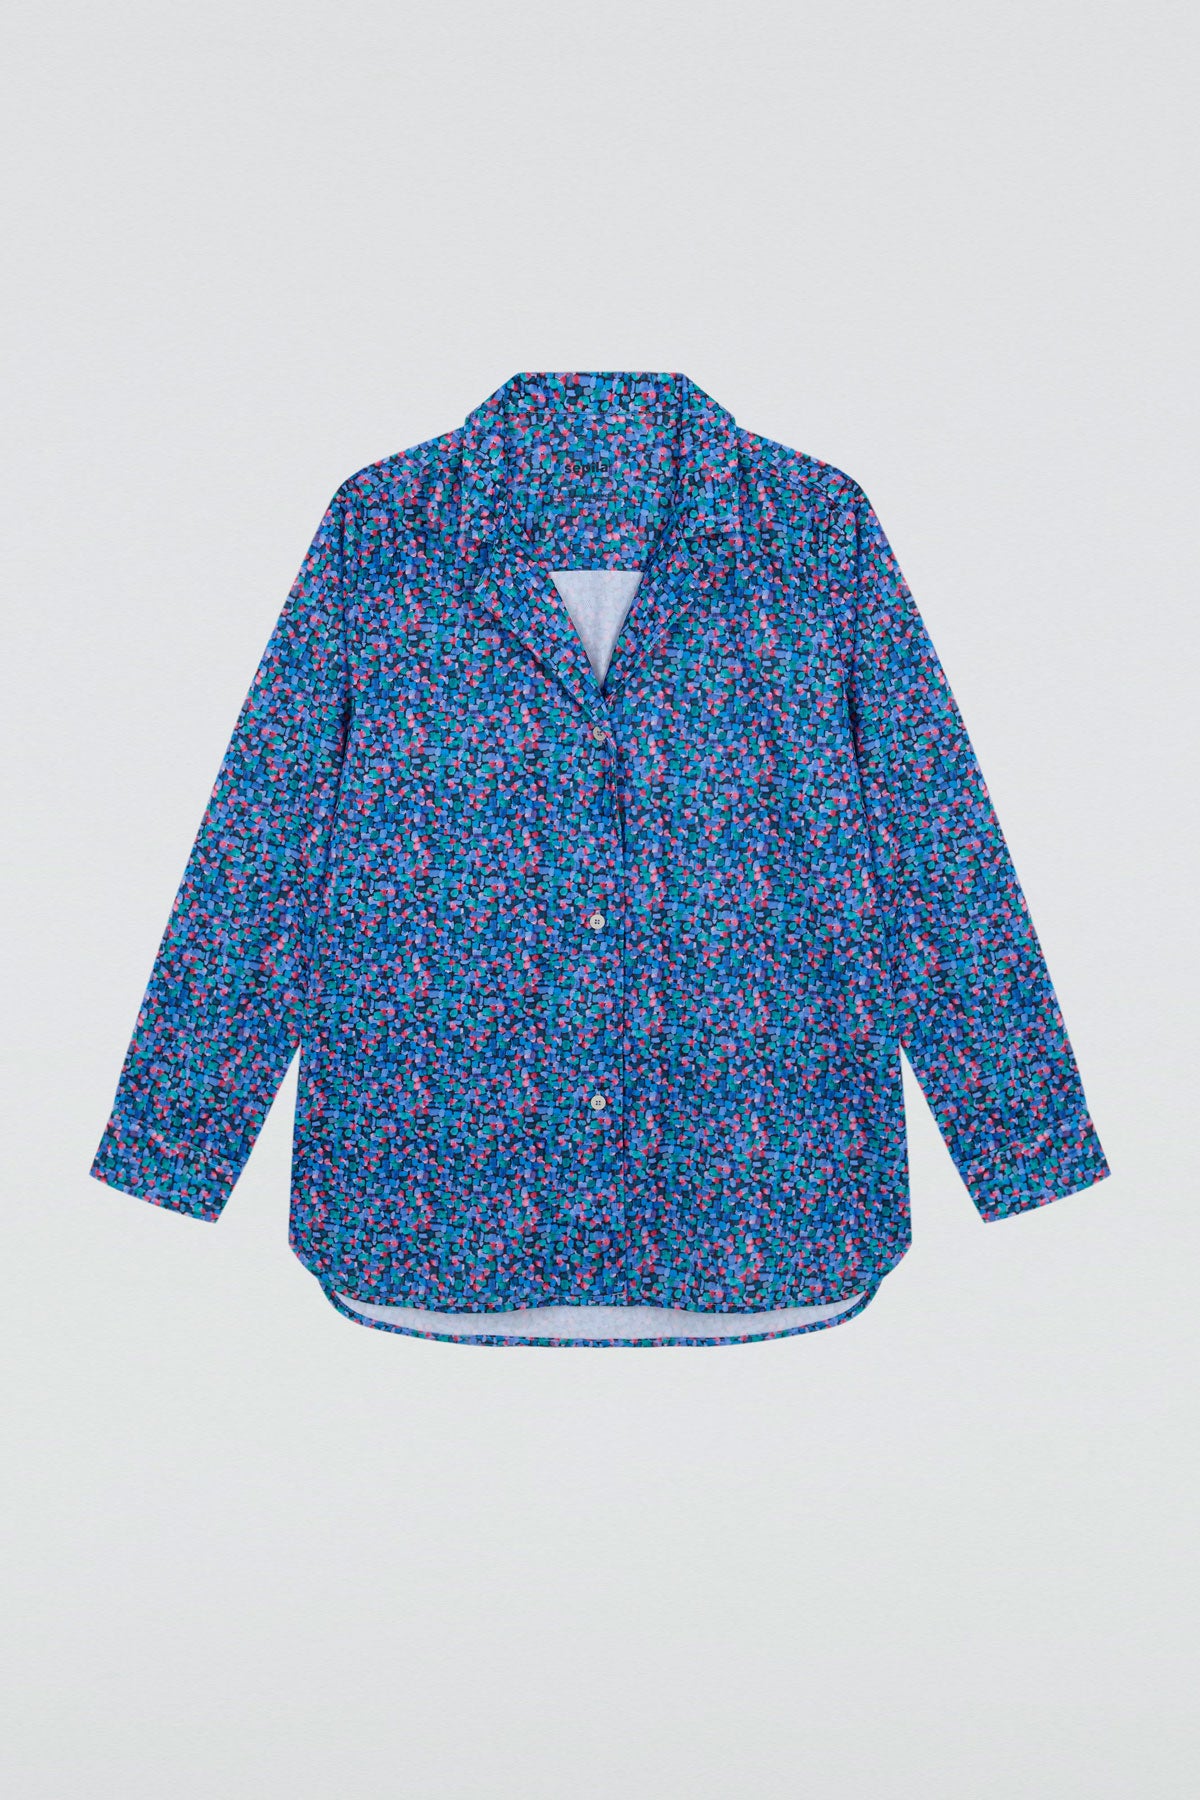 Camisa manga corta iris de Sepiia, fresca y elegante, perfecta para el verano. Foto plano